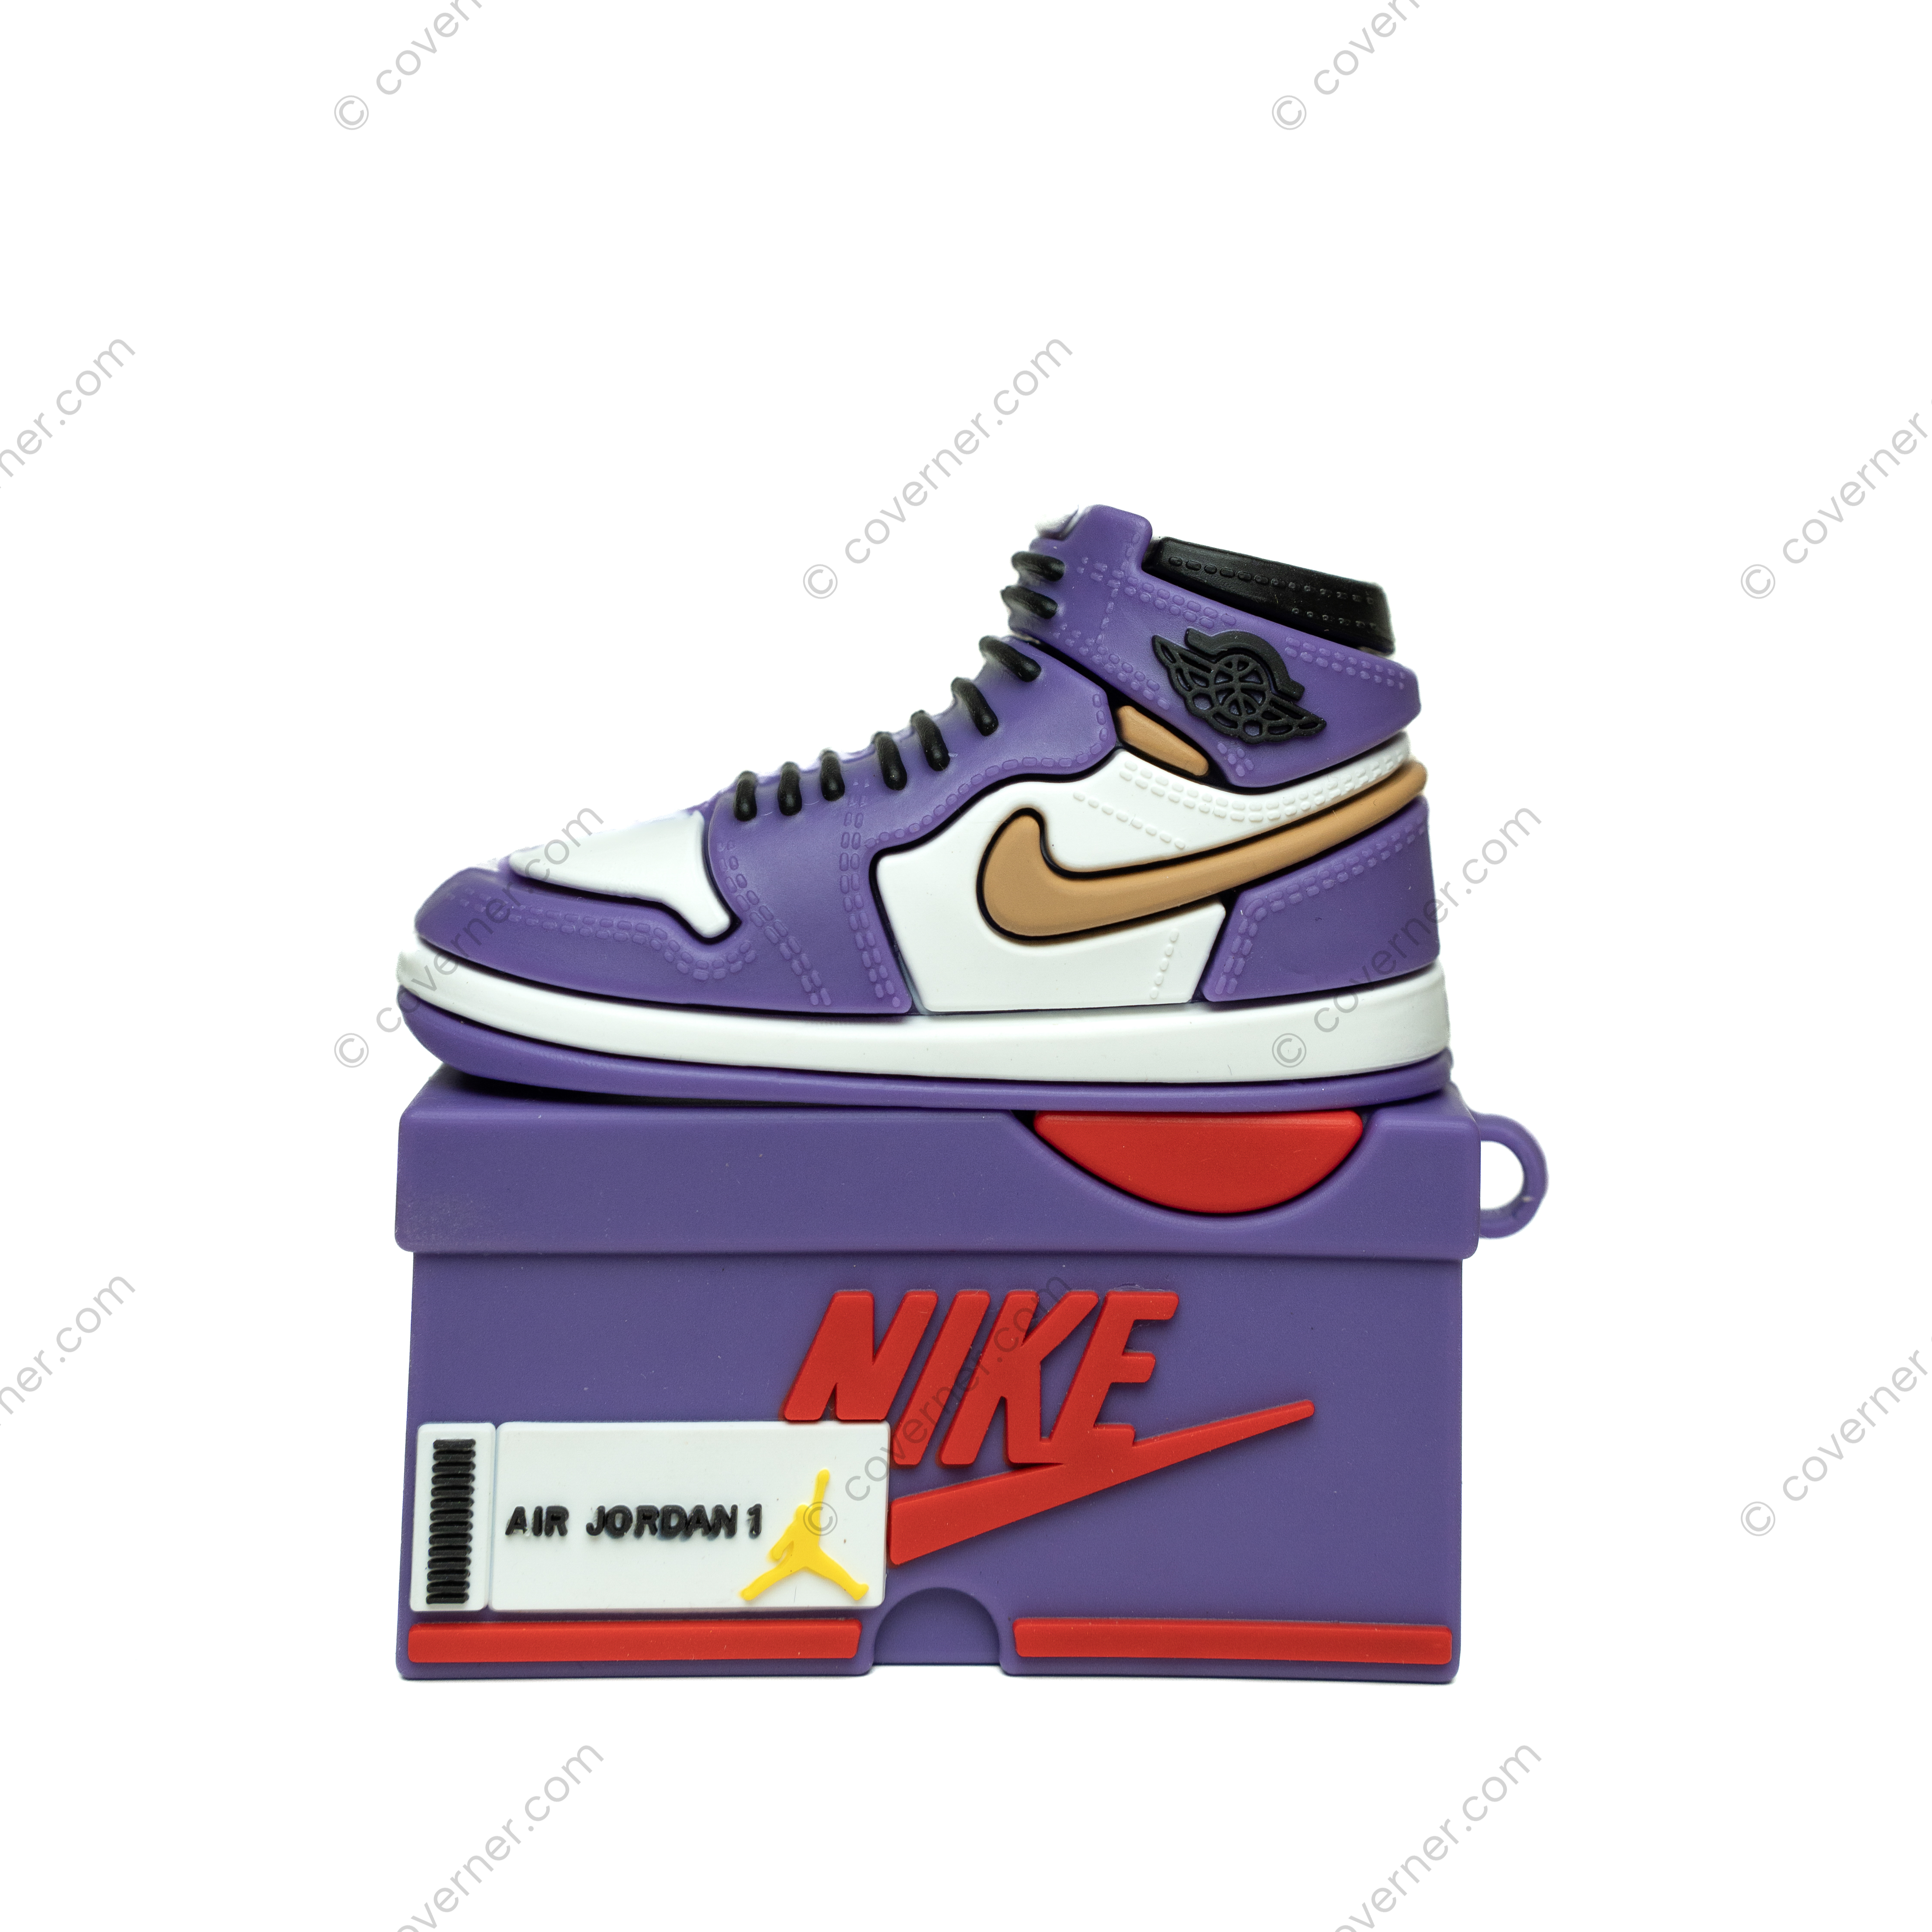 Sneaker Airpods Cases - Air Jordan 1 Purple